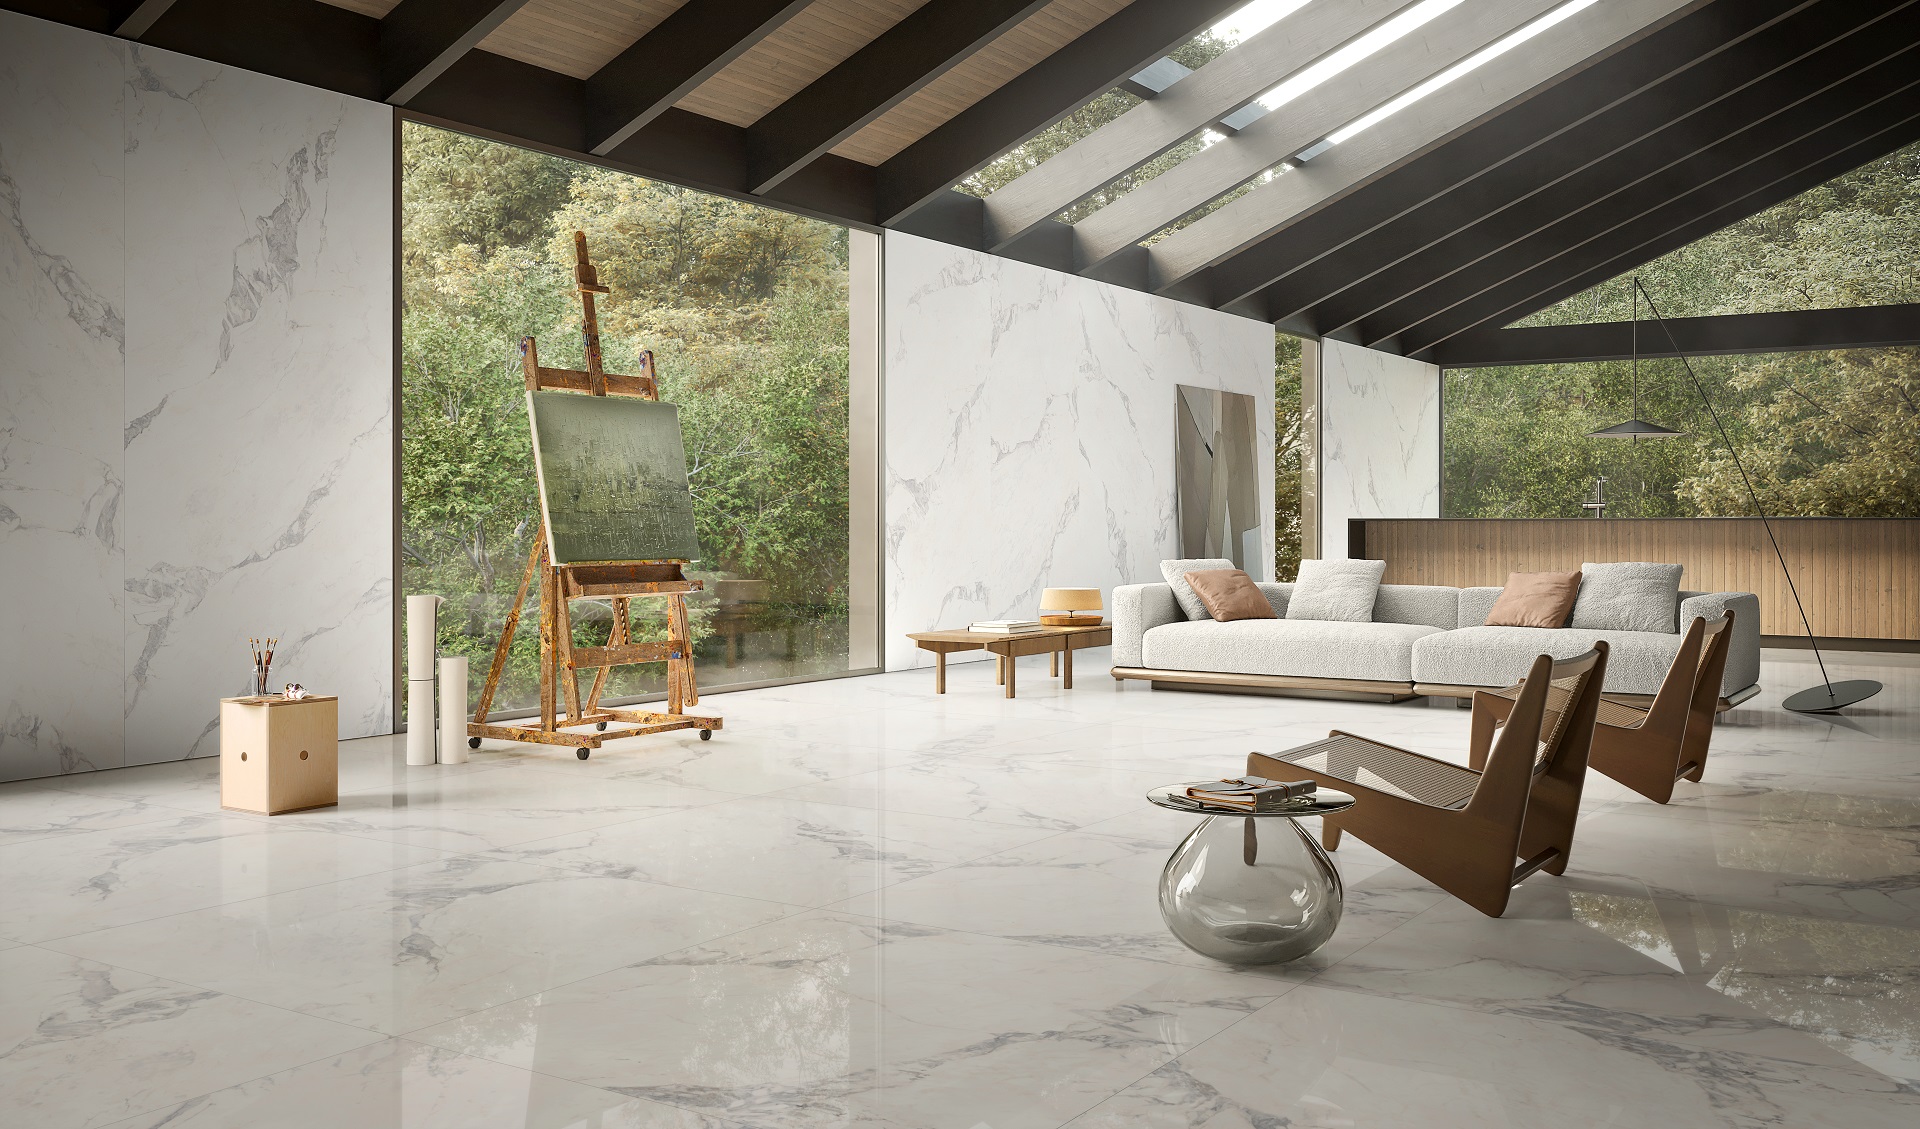 Sala ampla e clara, com piso de mármore, janelas de vidro e móveis minimalistas